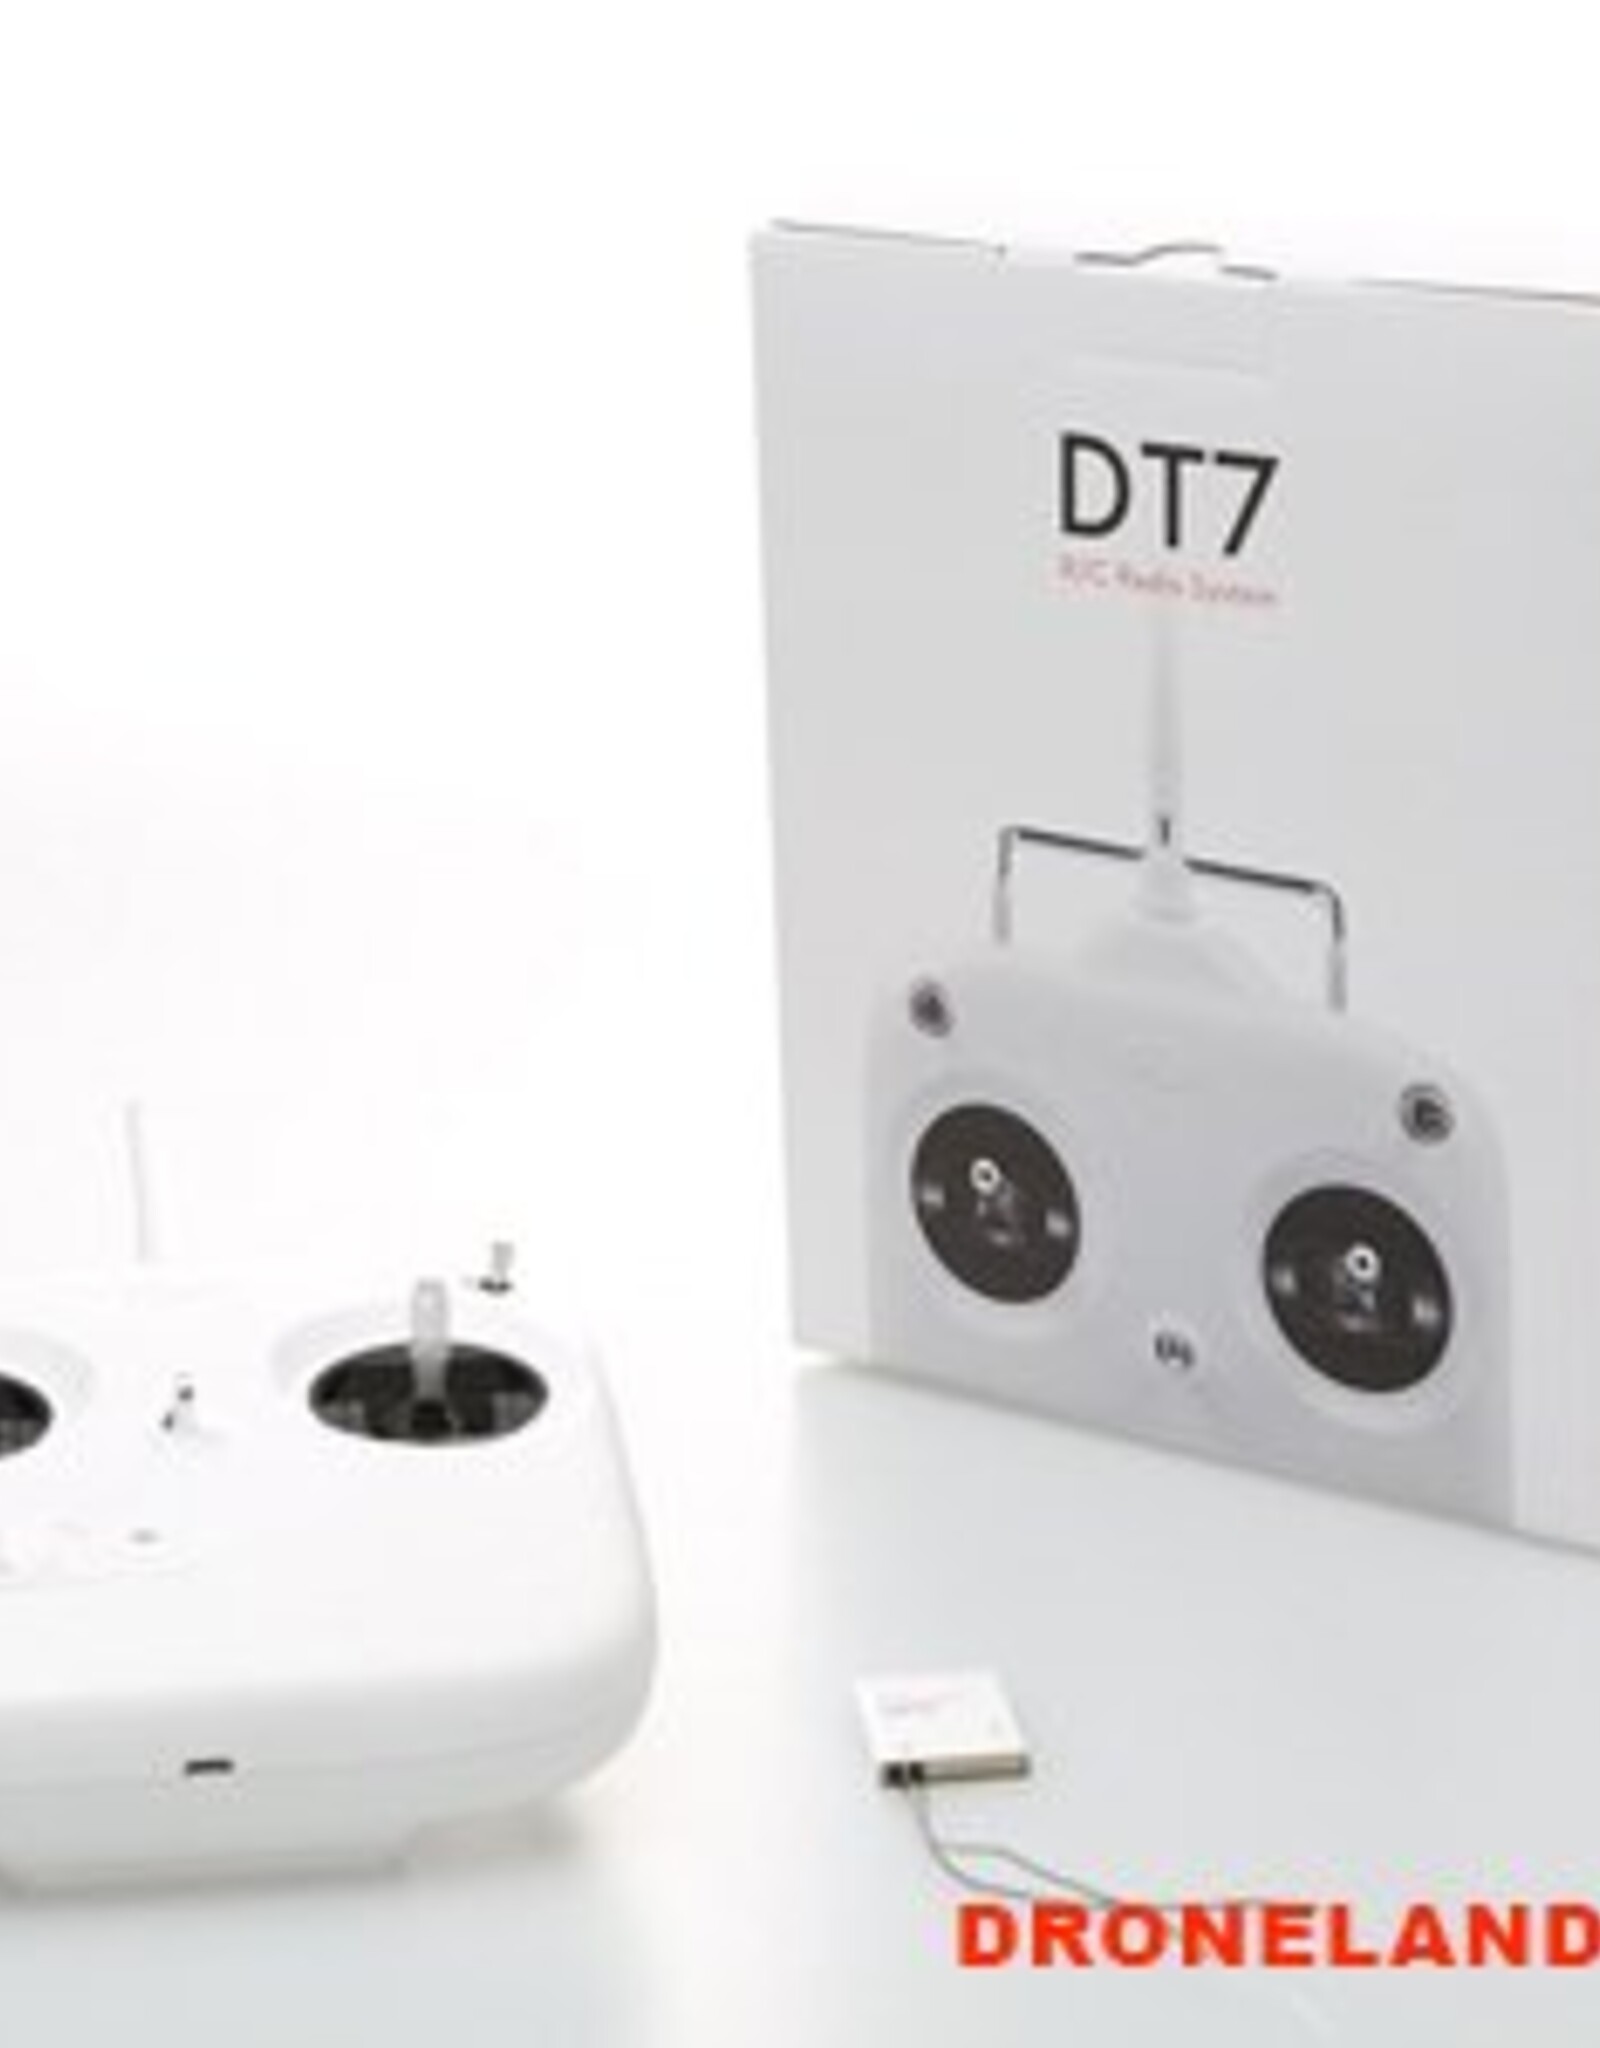 DJI DJI DT7 Remote Controller Kit